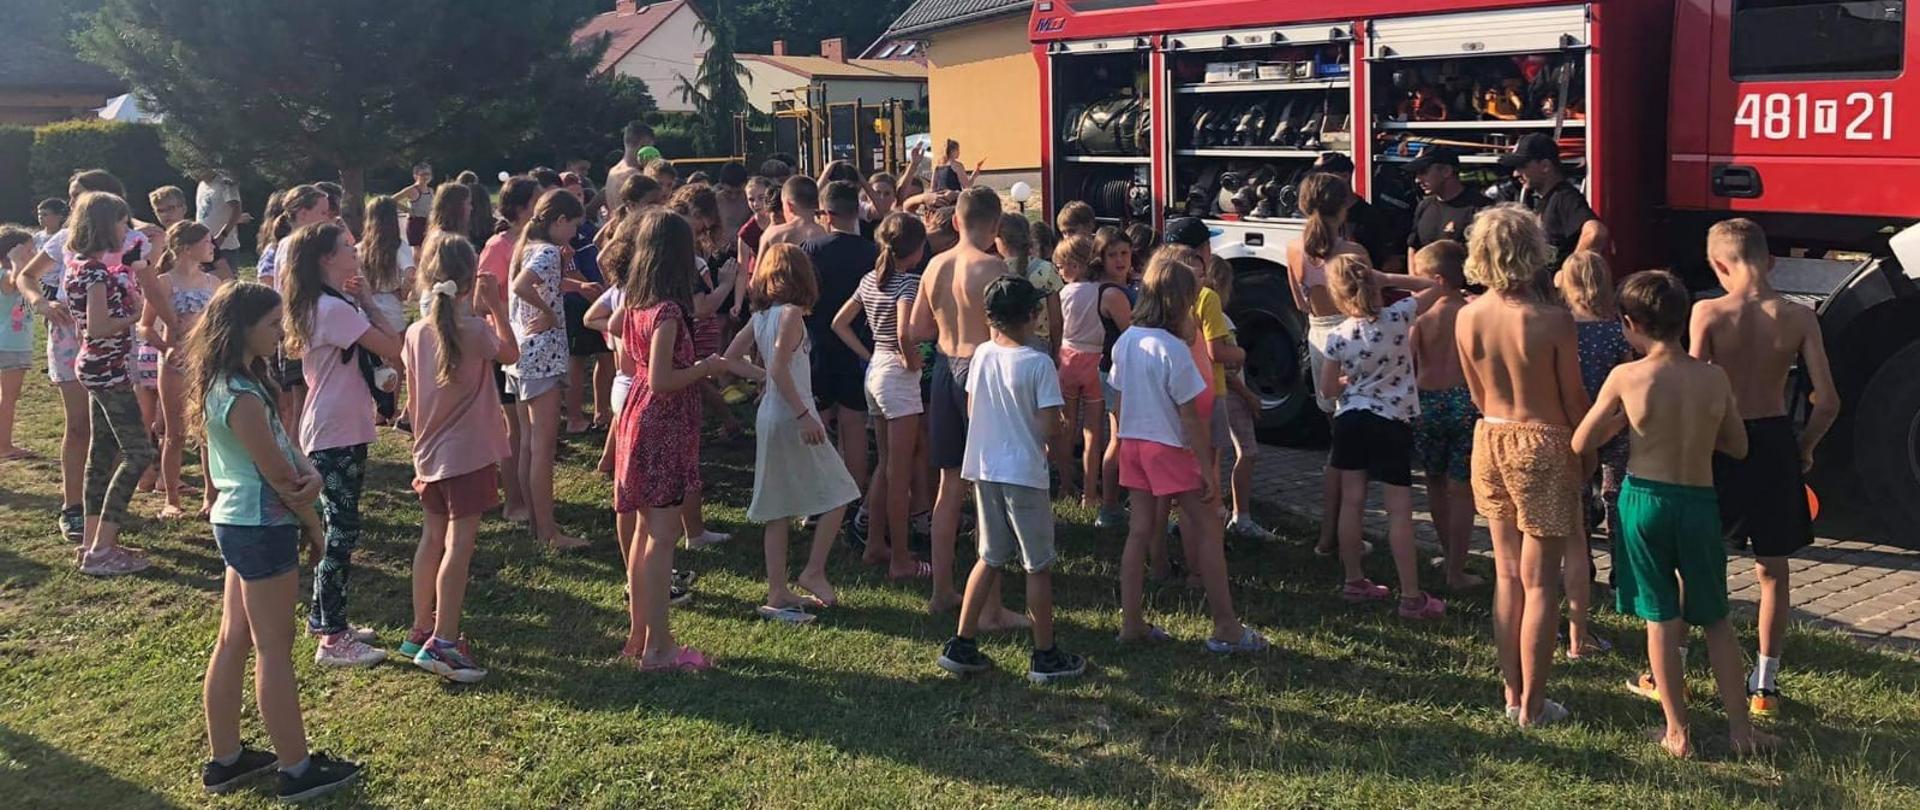 Na zdjęciu widzimy jak skarżyscy strażacy prezentują dzieciom wypoczywających na terenie Hotelu PARADISO sprzęt ratowniczo-gaśniczy znajdujący się na wyposażeniu samochodu pożarniczego.